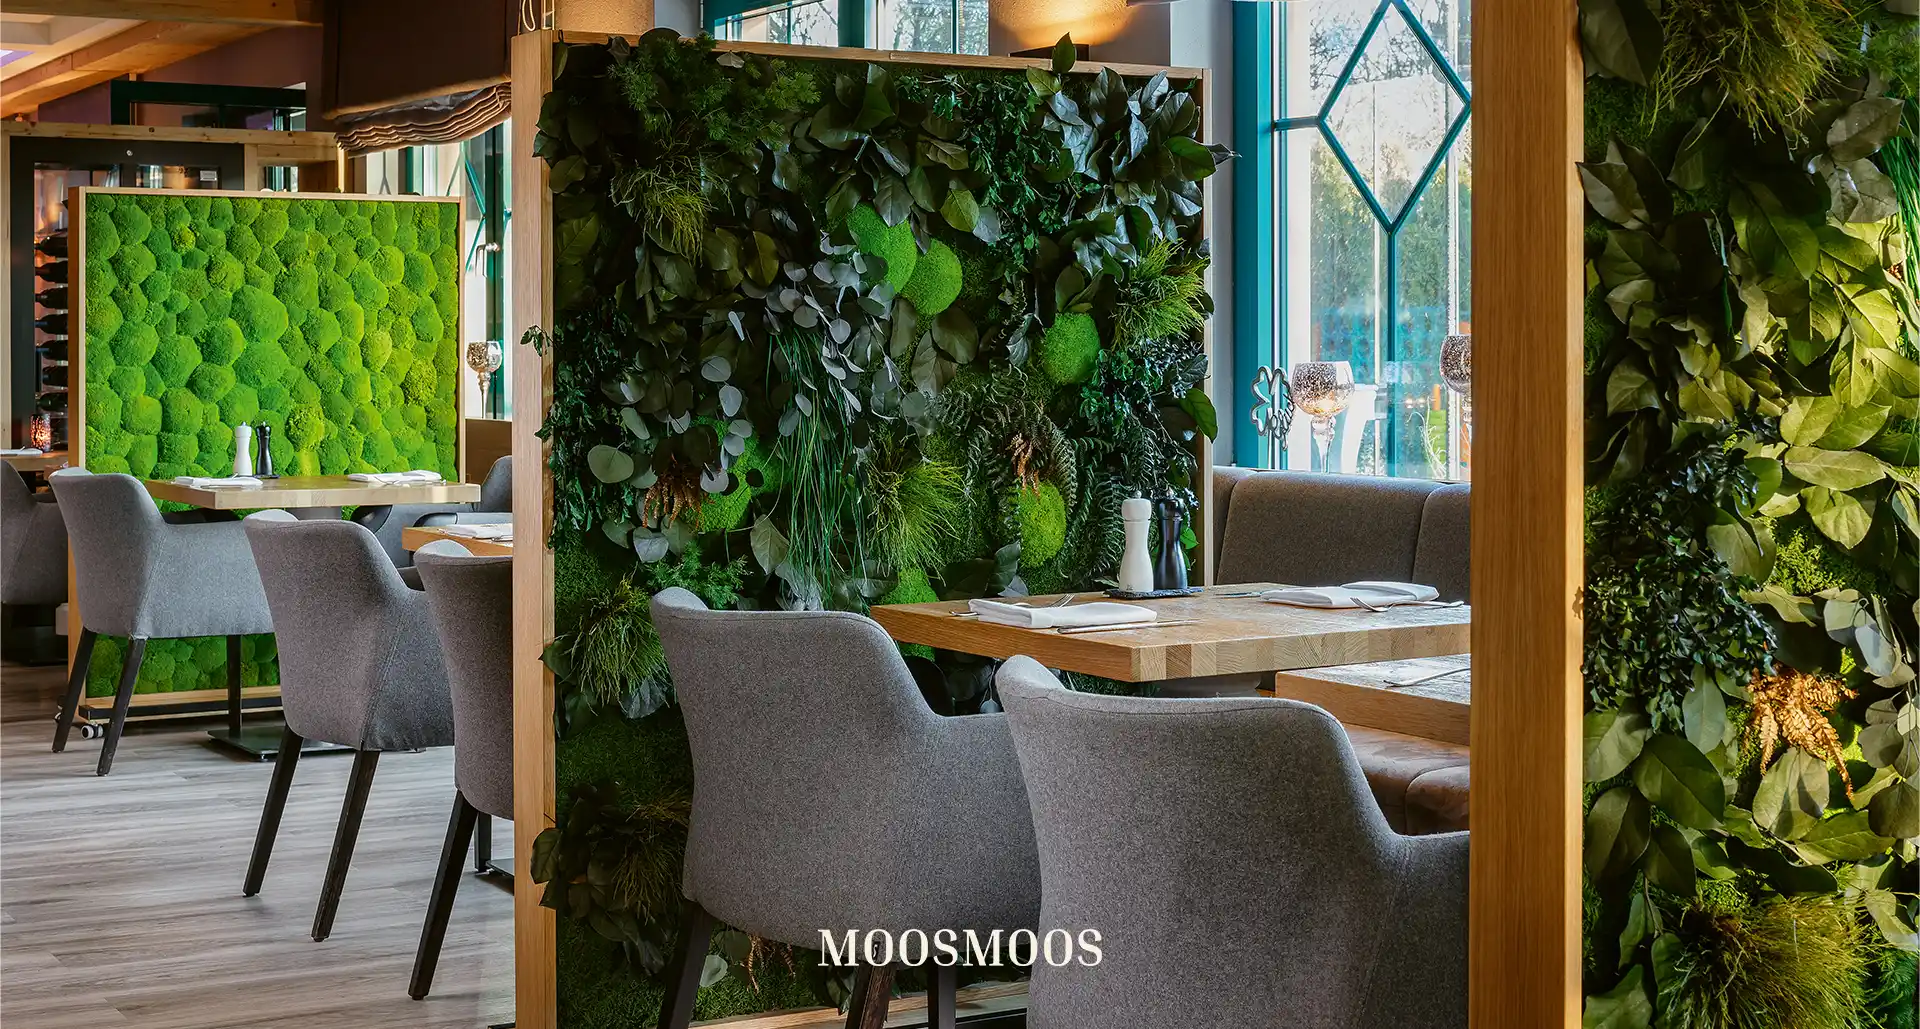 MoosMoos rollbarer Raumteiler und Trennwände aus Moos und Pflanzen